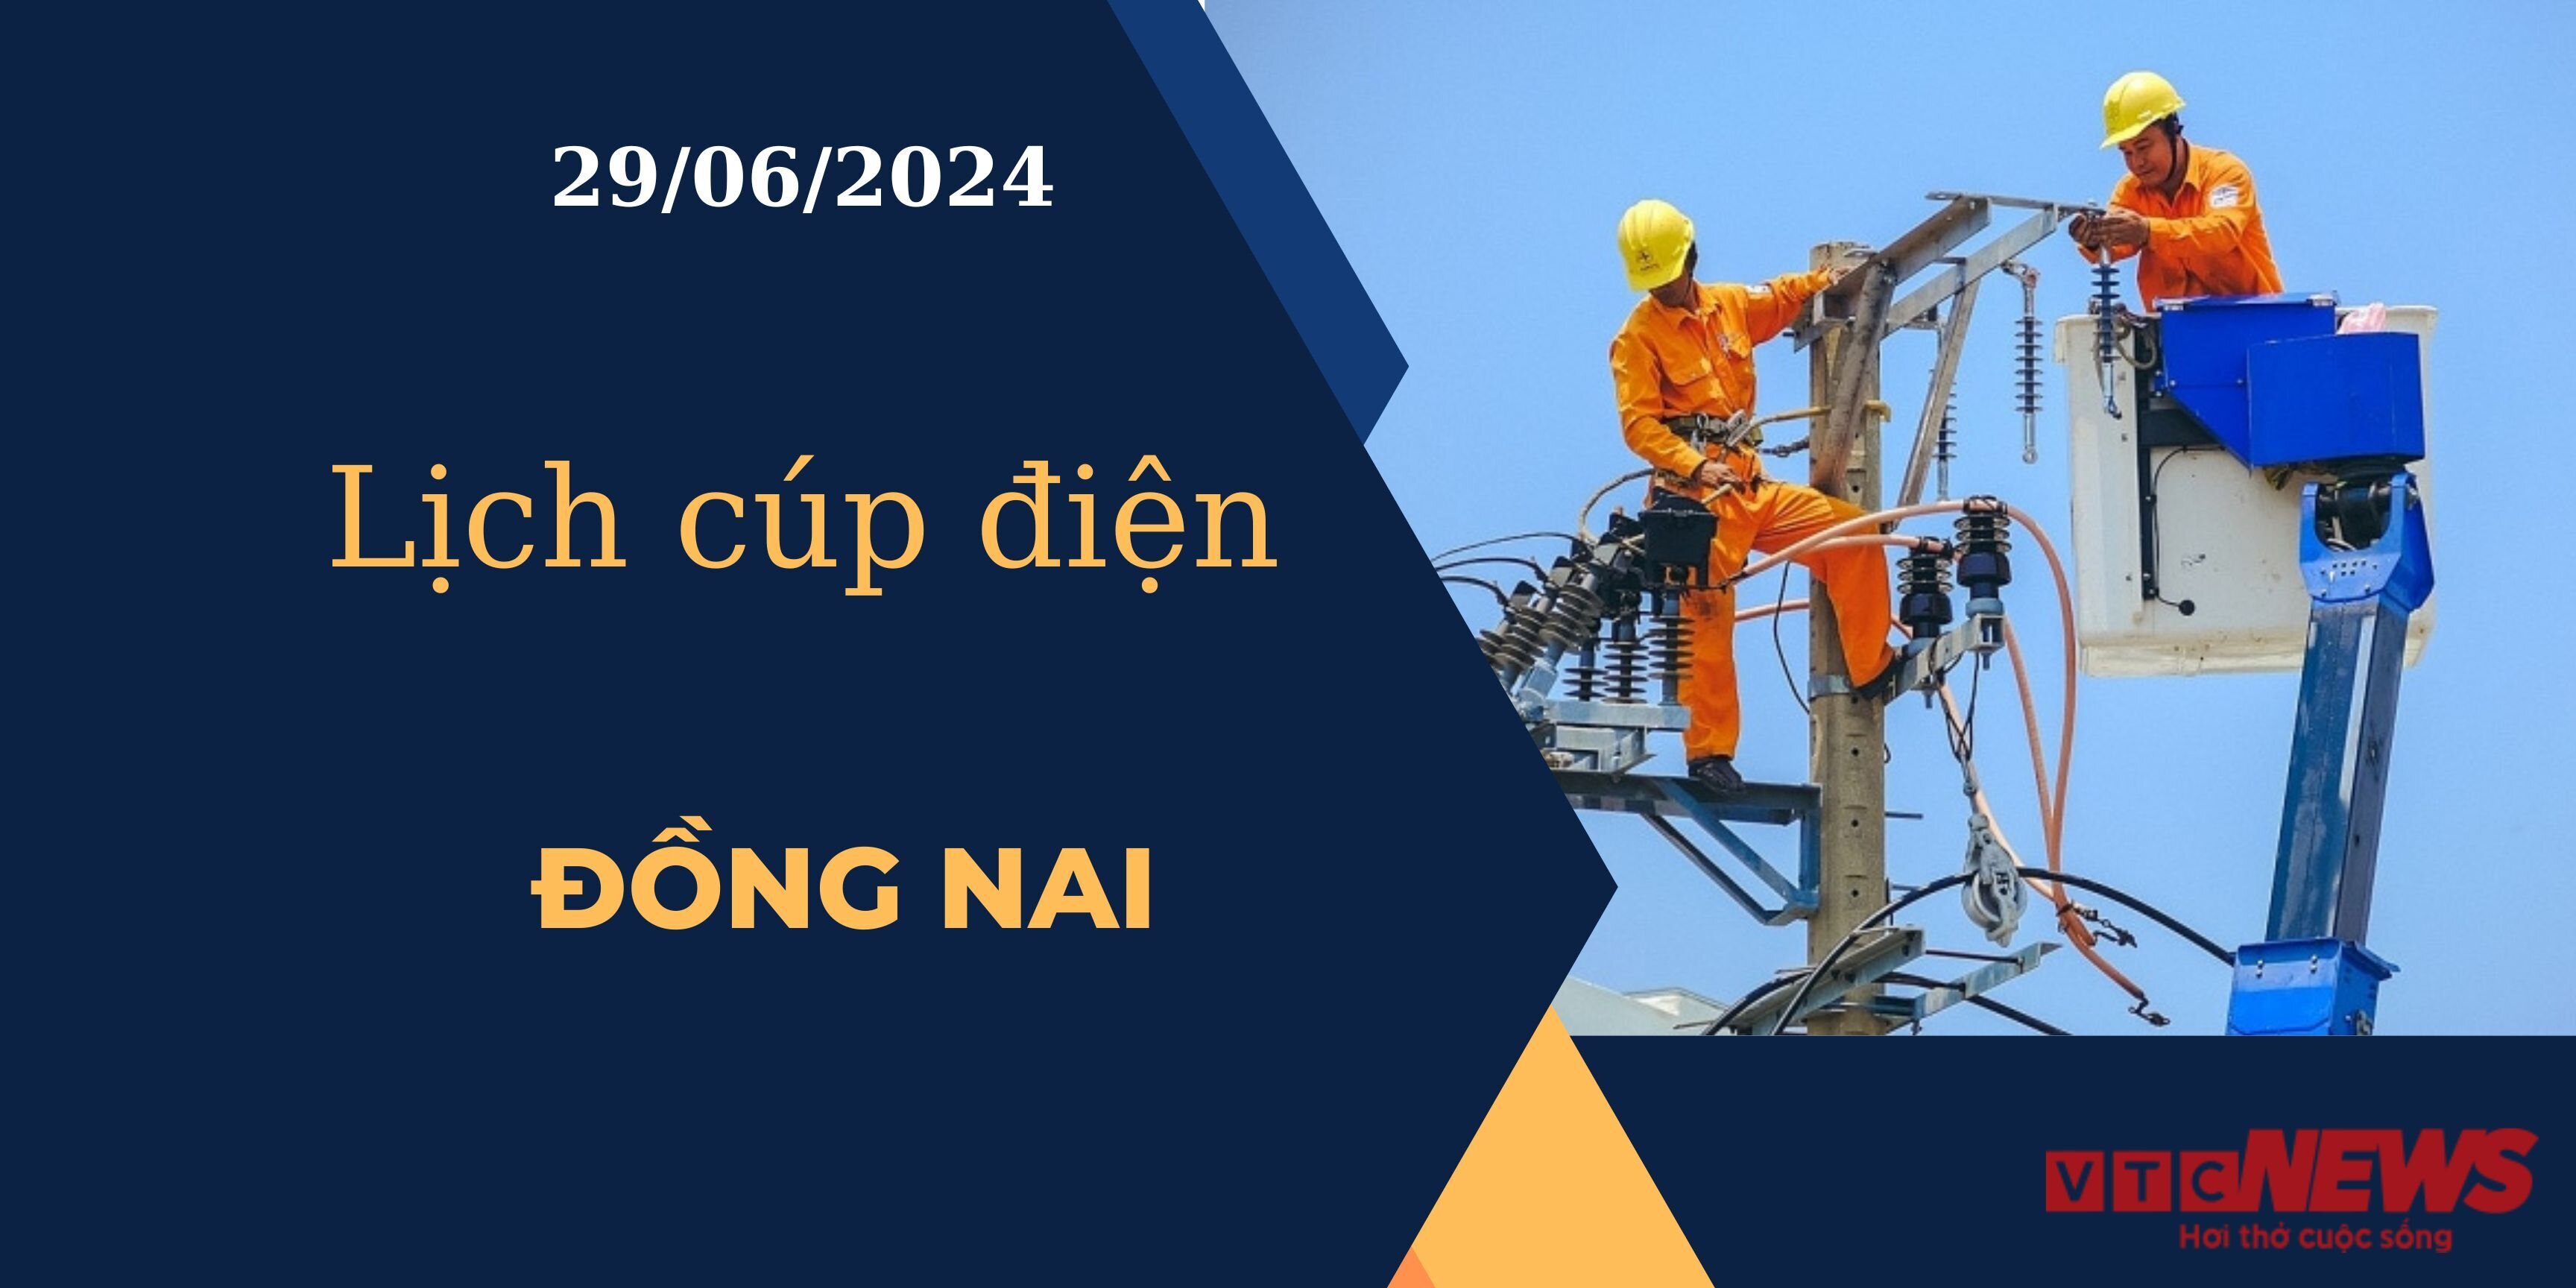 Lịch cúp điện hôm nay ngày 29/06/2024 tại Đồng Nai